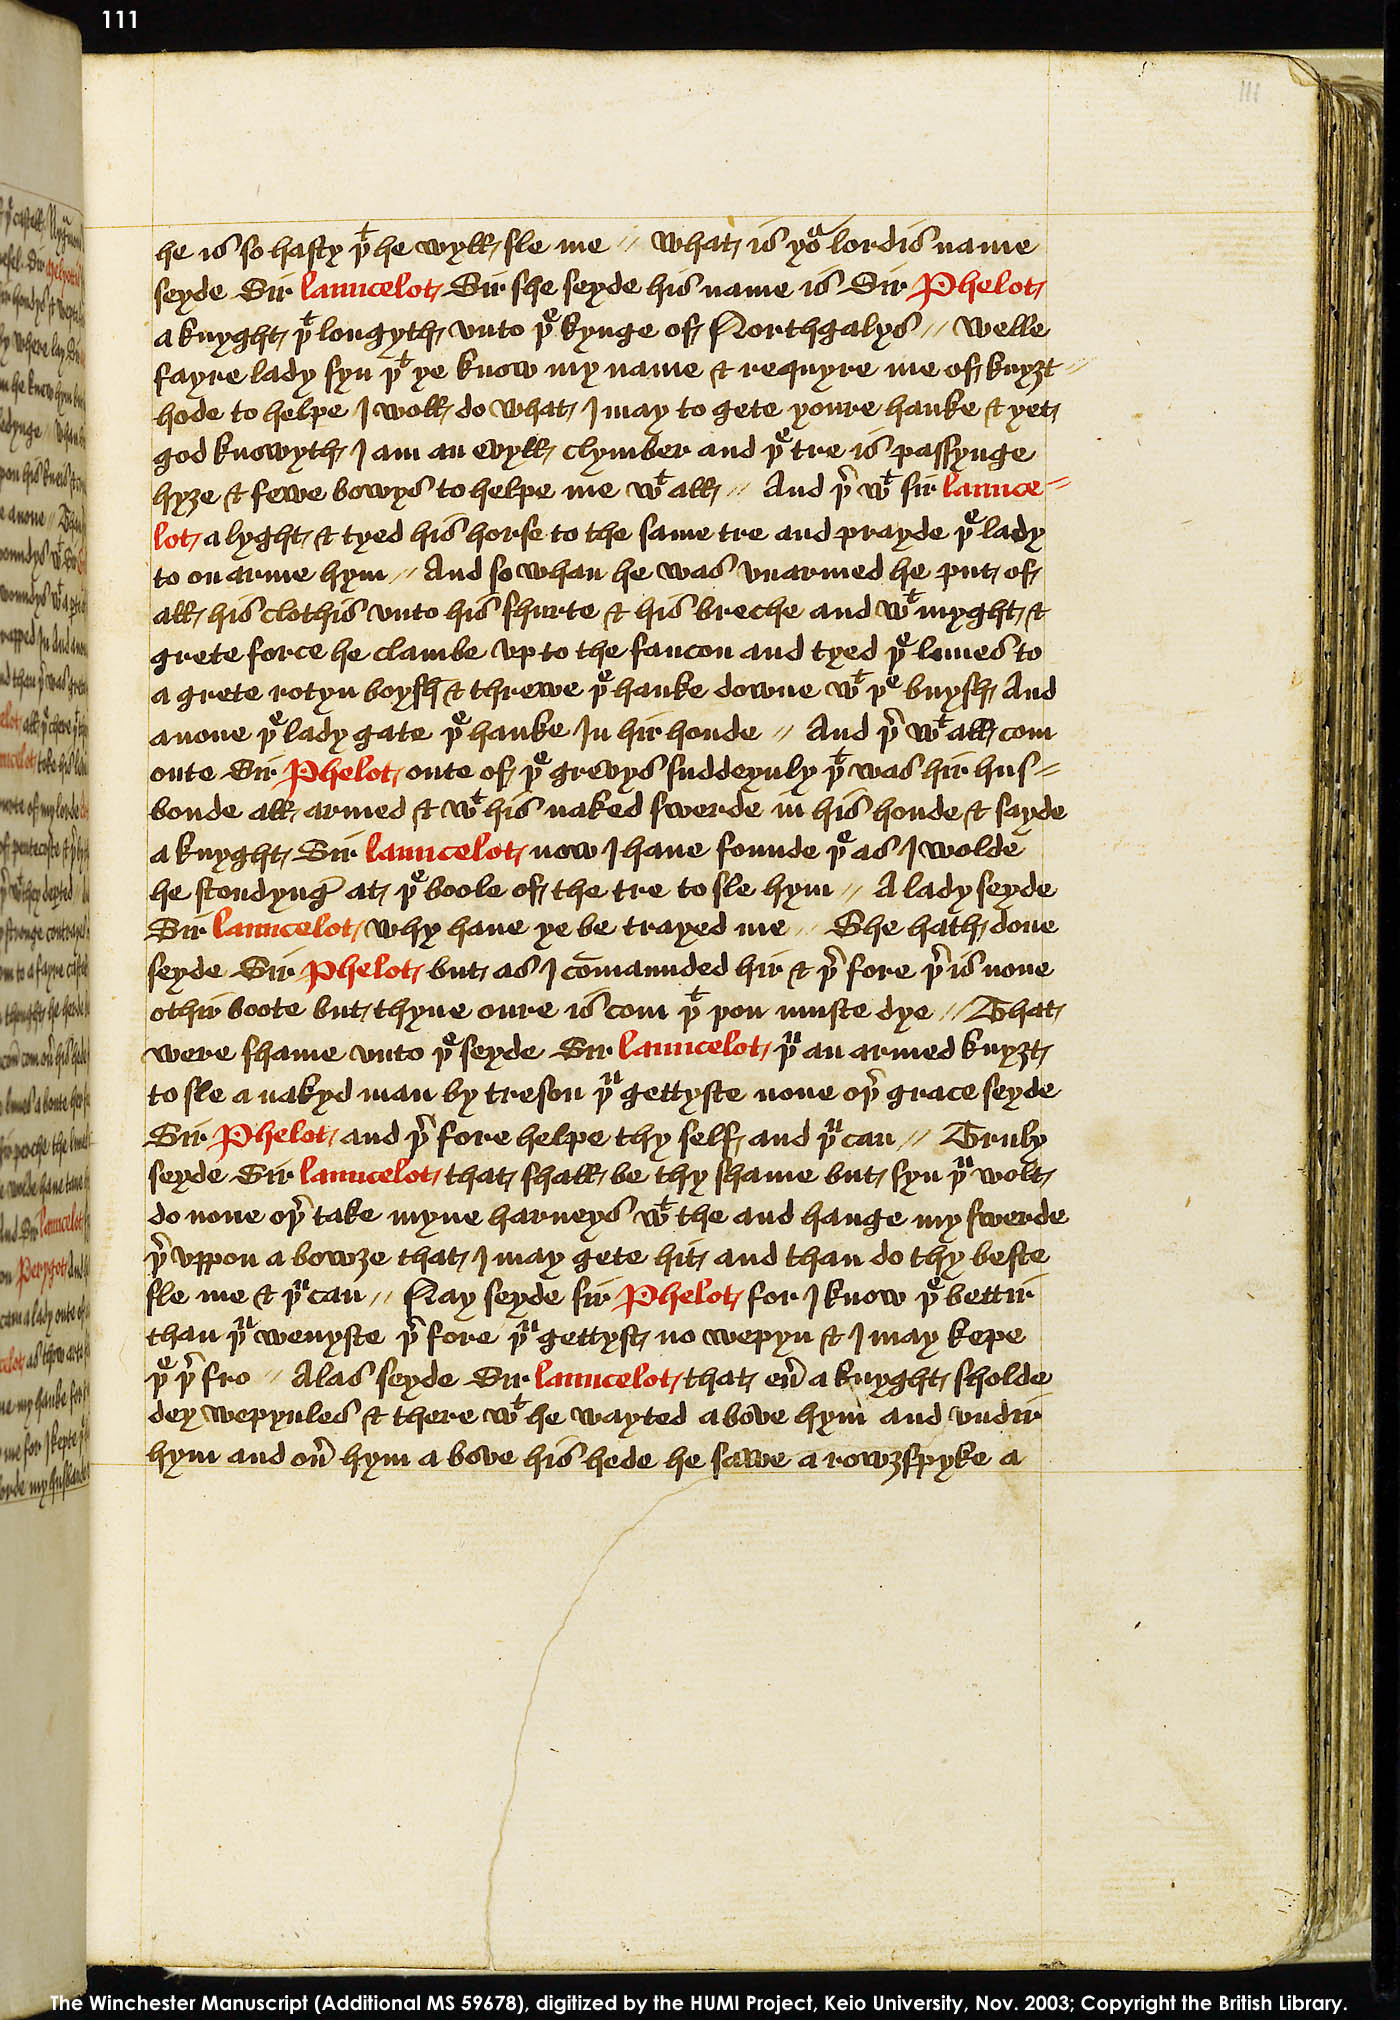 Folio 111r